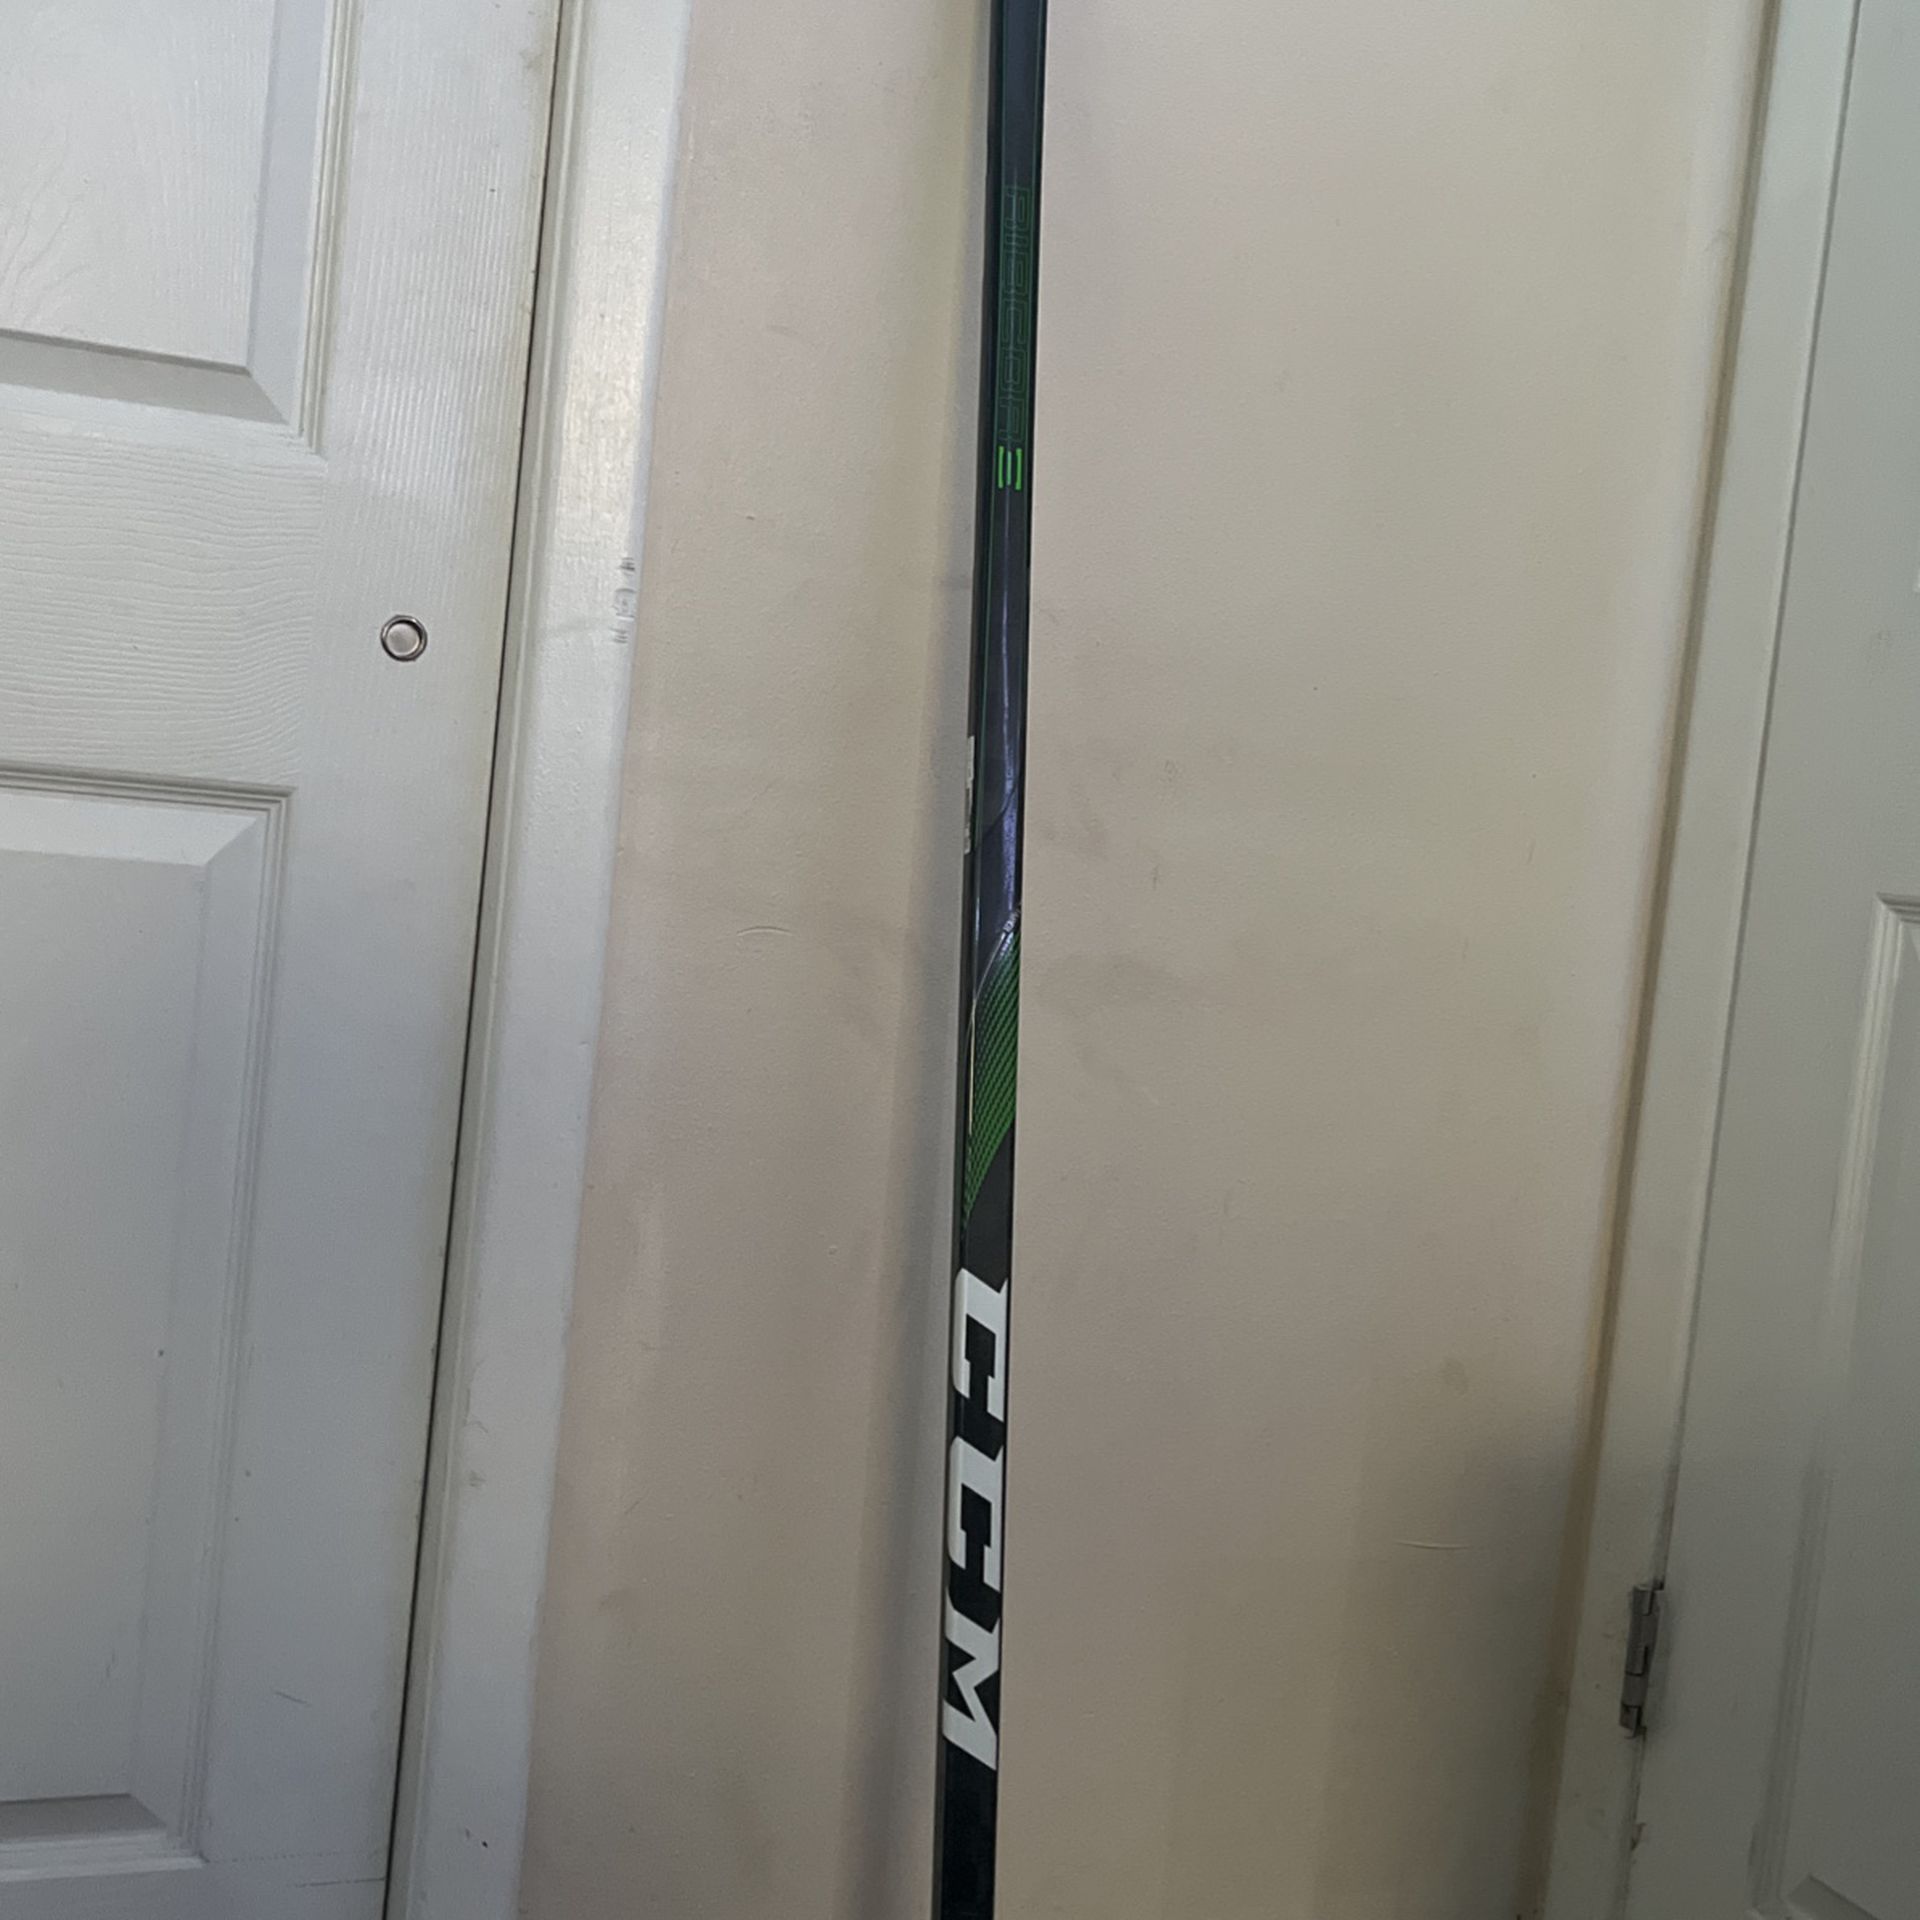 Sam Reinhart Game Used And Auto Graphed Ccm Trigger 4 Hockey Stick 